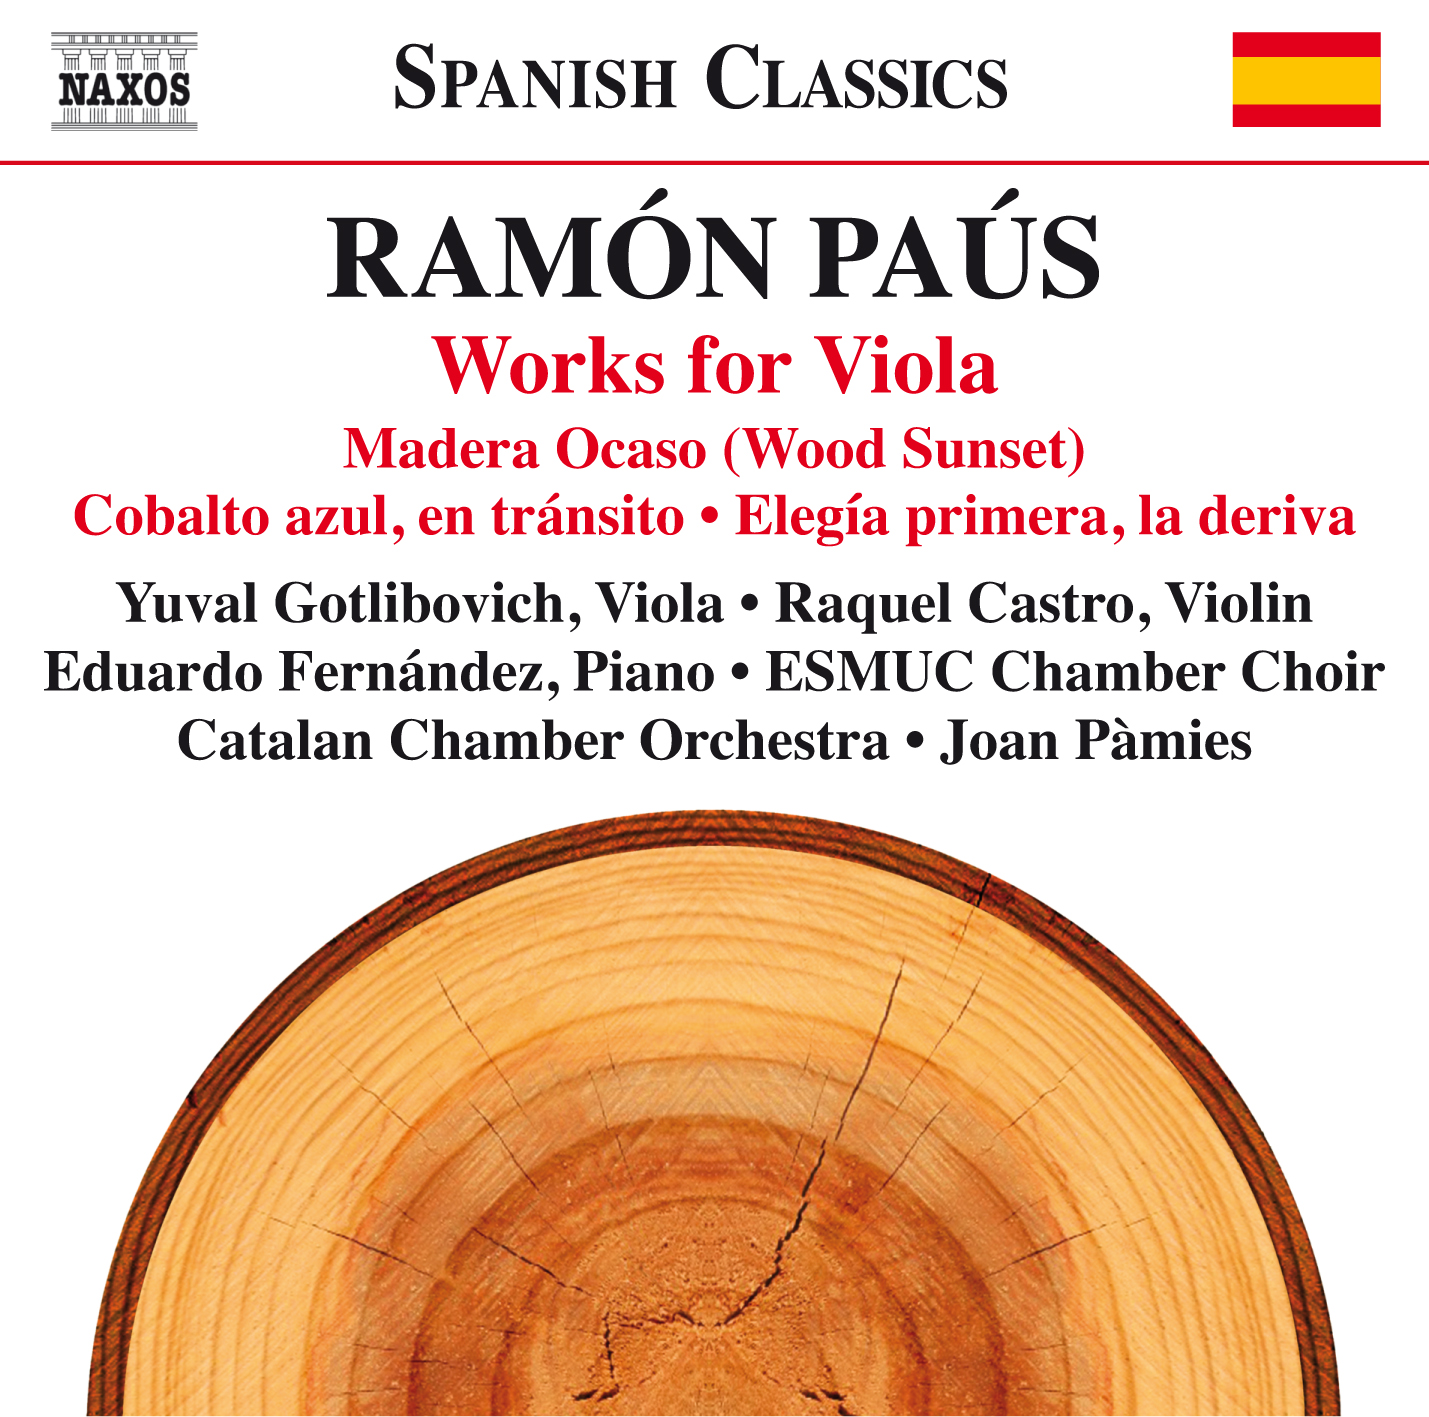 Nuevo CD de Ramón Paus: Viola Works